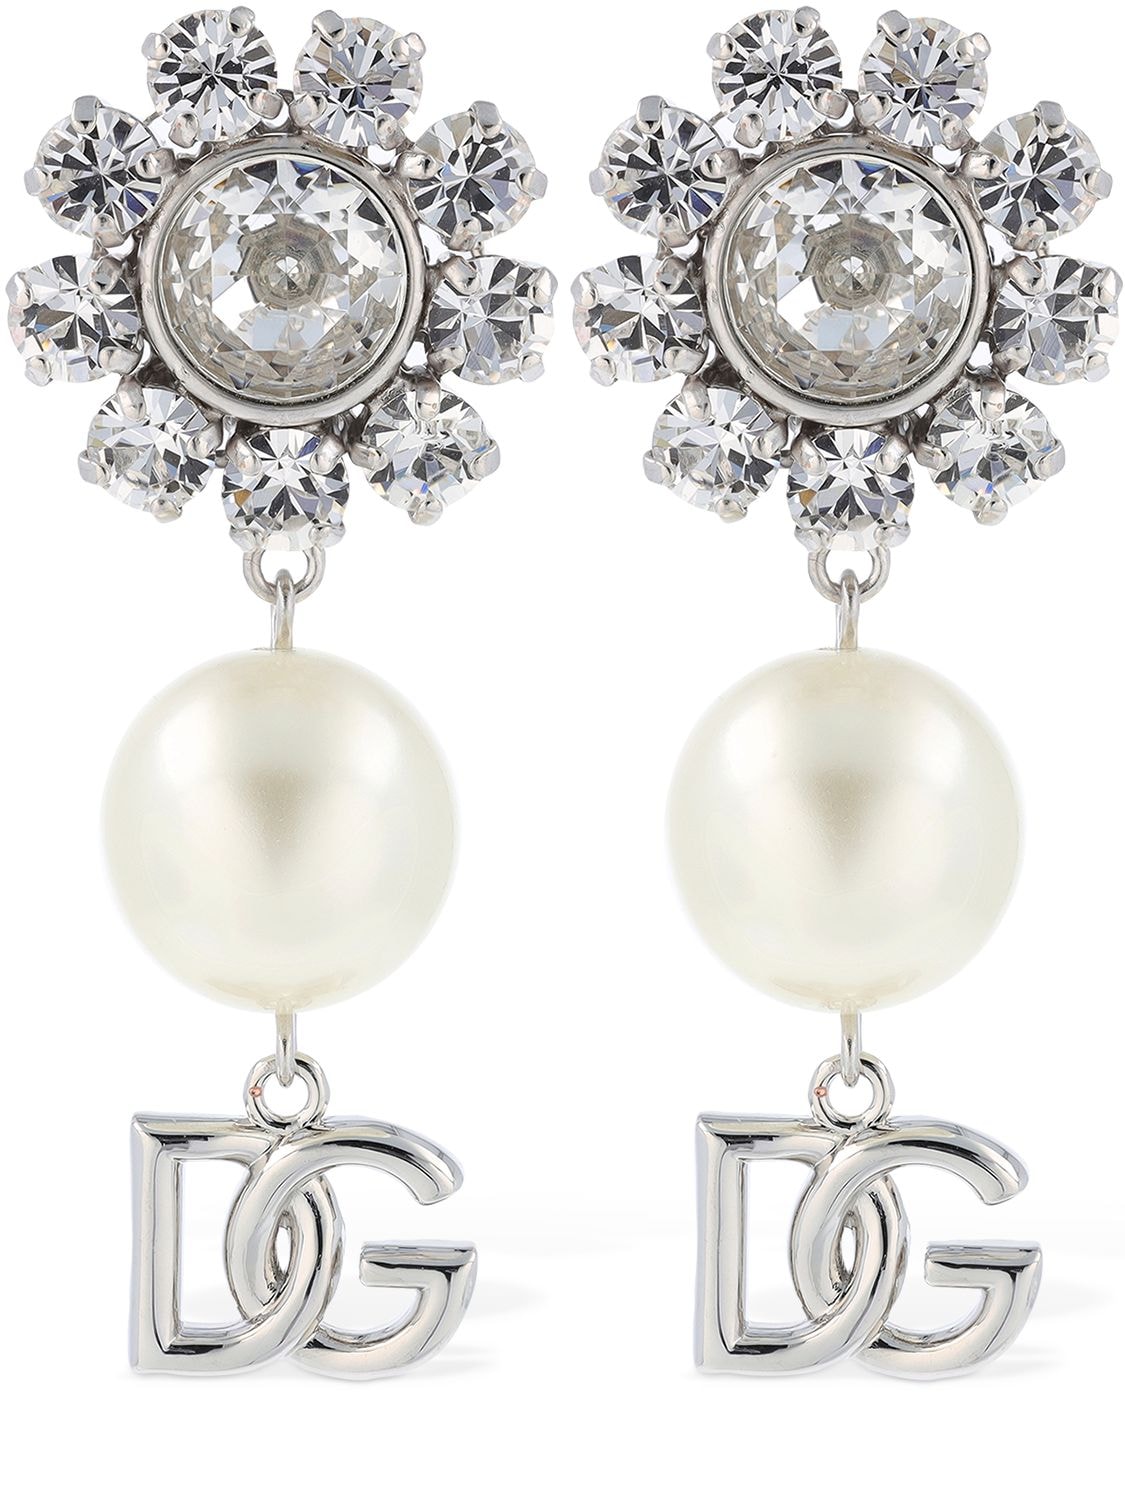 Dg Zebra Crystal & Faux Pearl Earrings